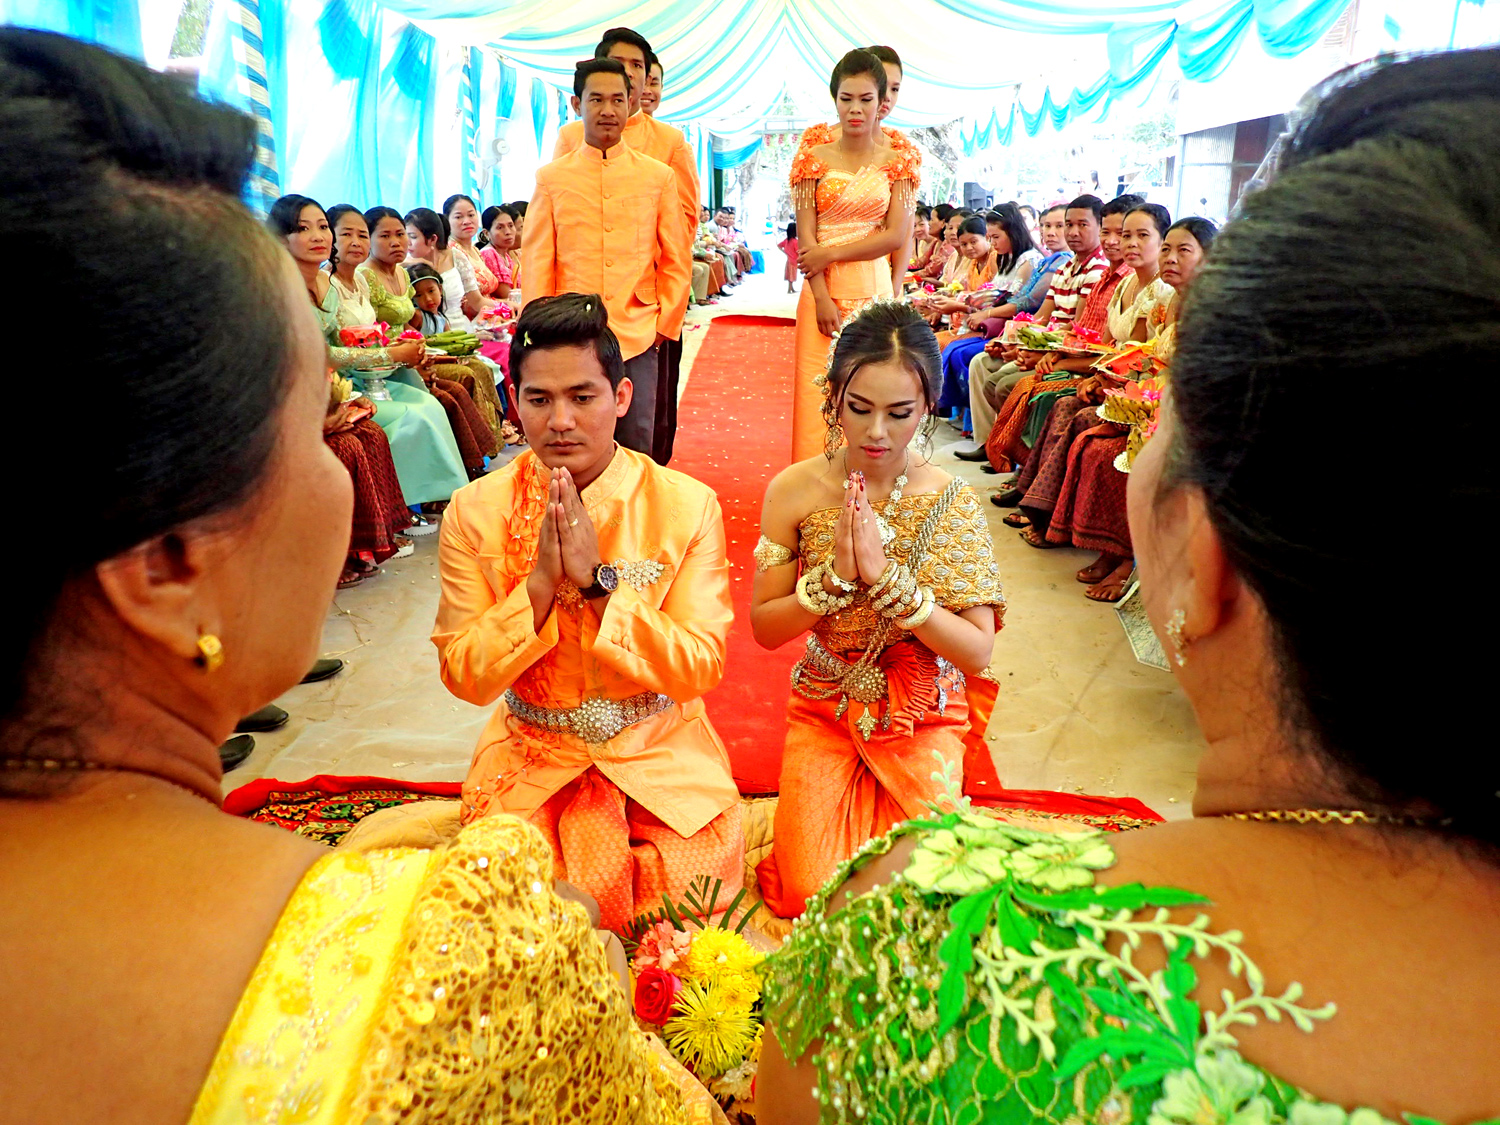 Cerimonia di Matrimonio Cambogiana: Battambang, Cambogia